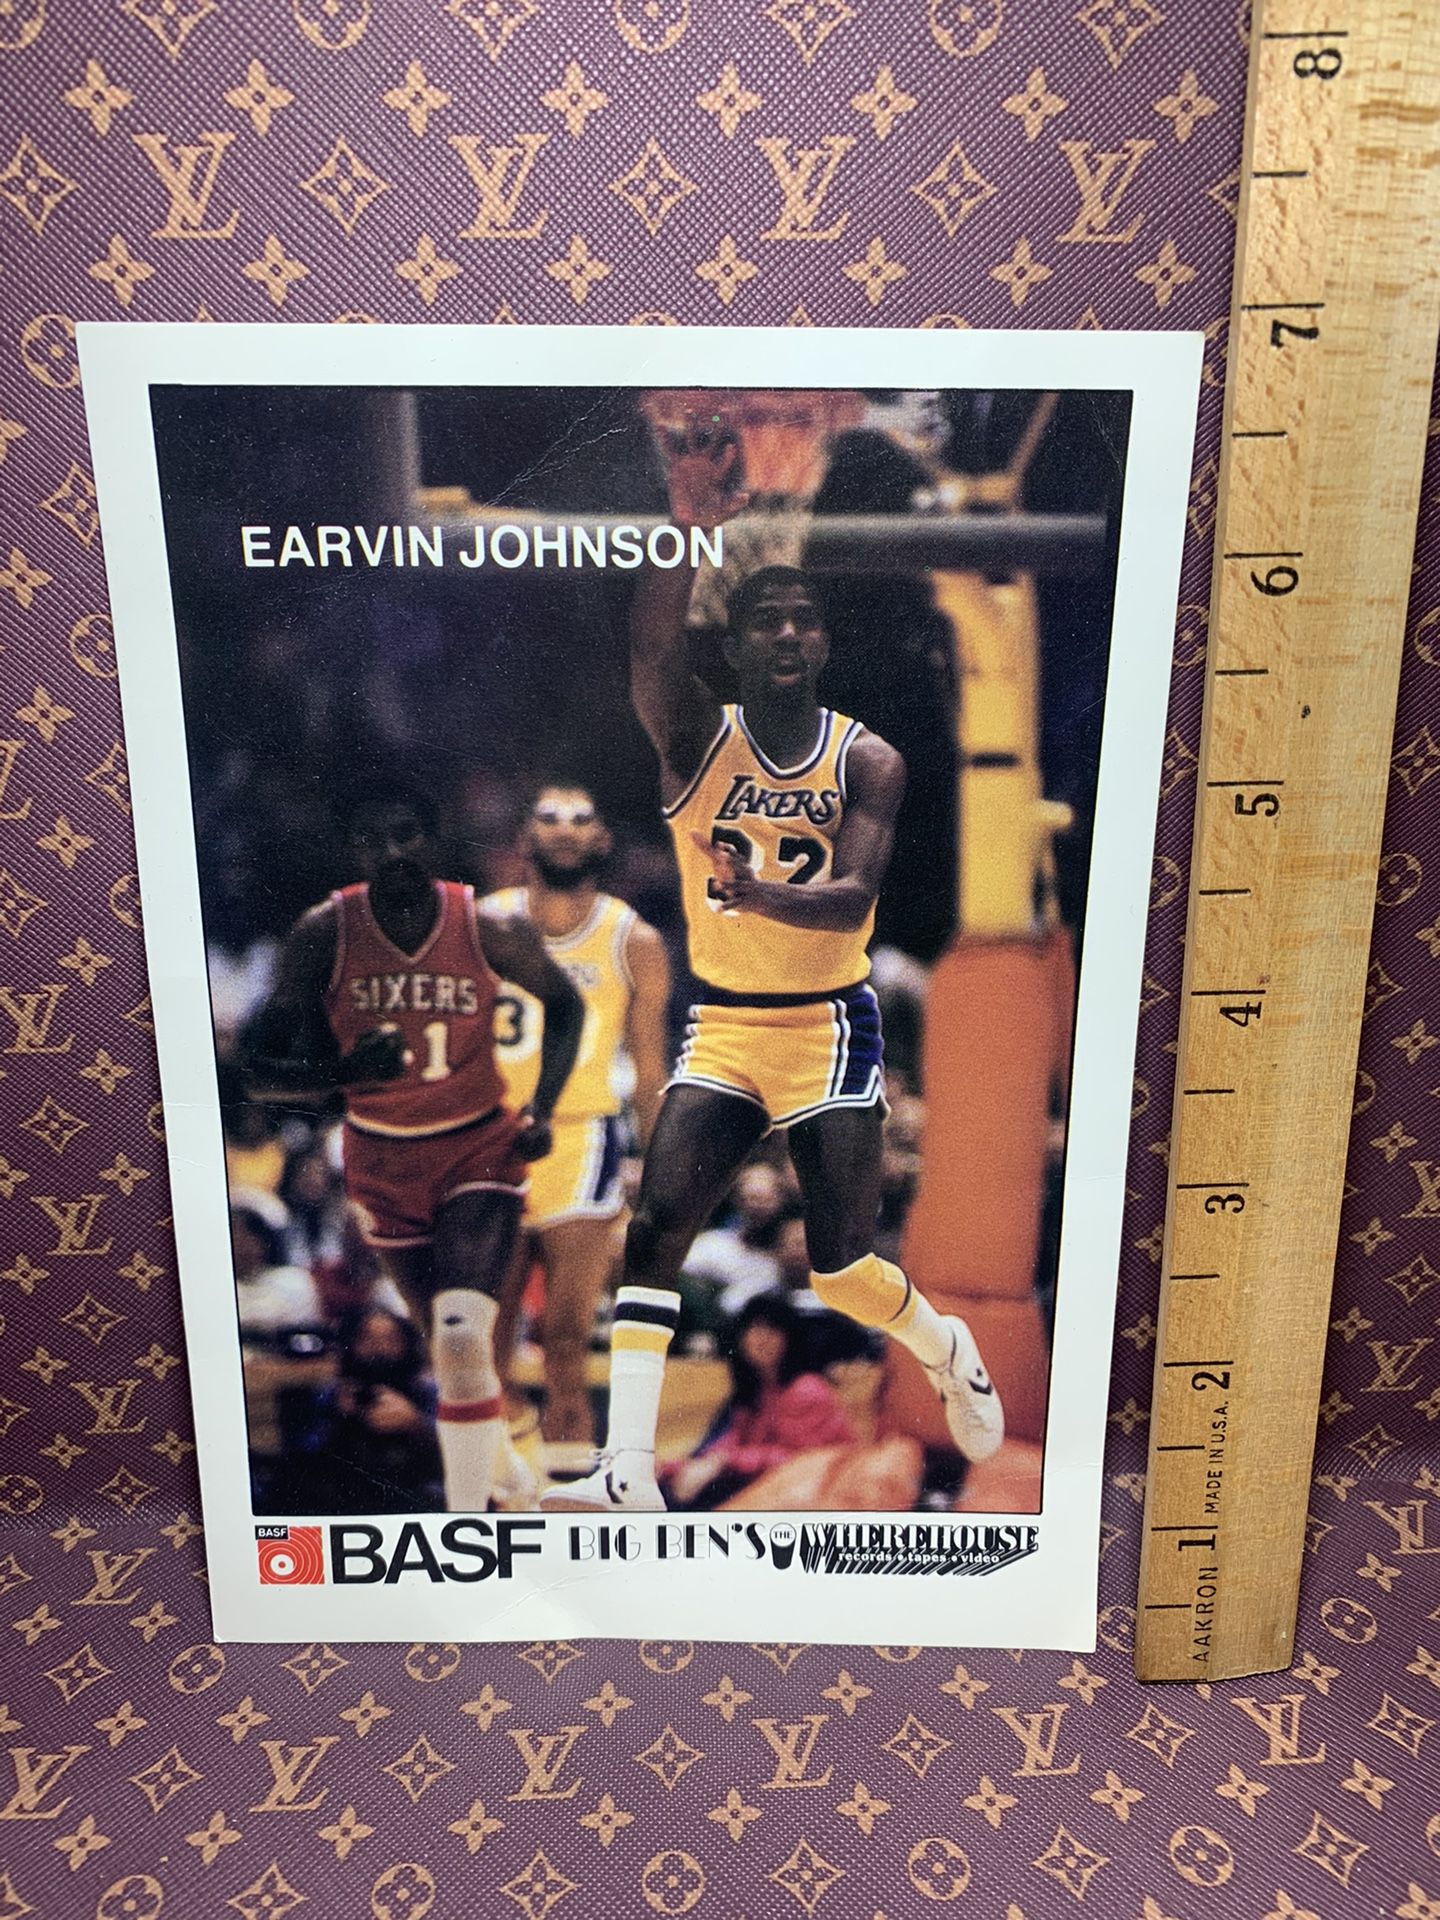 1989 Addison Publishing Book Promo #17 Magic Johnson Lakers C19863 - NM-MT